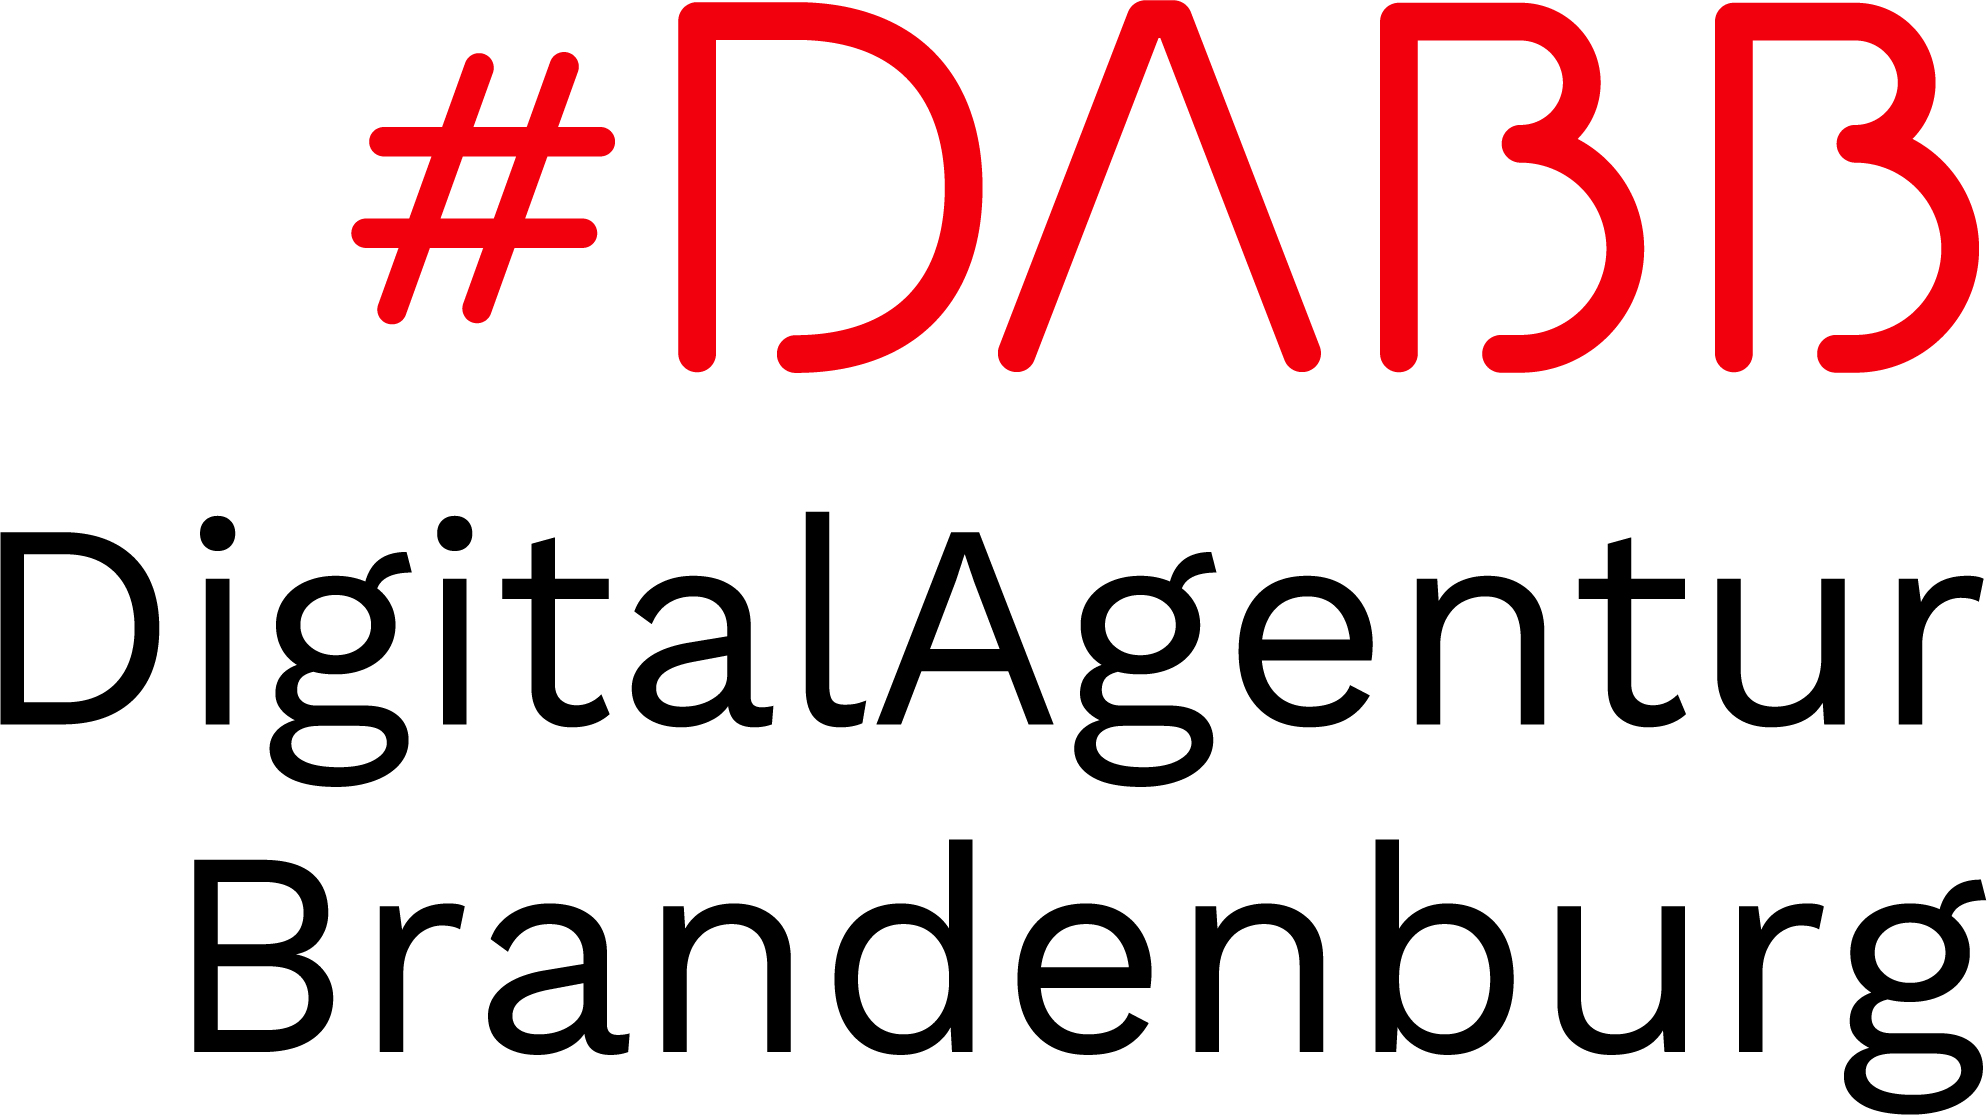 Logo Digital Agency Brandenburg, nazwa skrócona: DABB